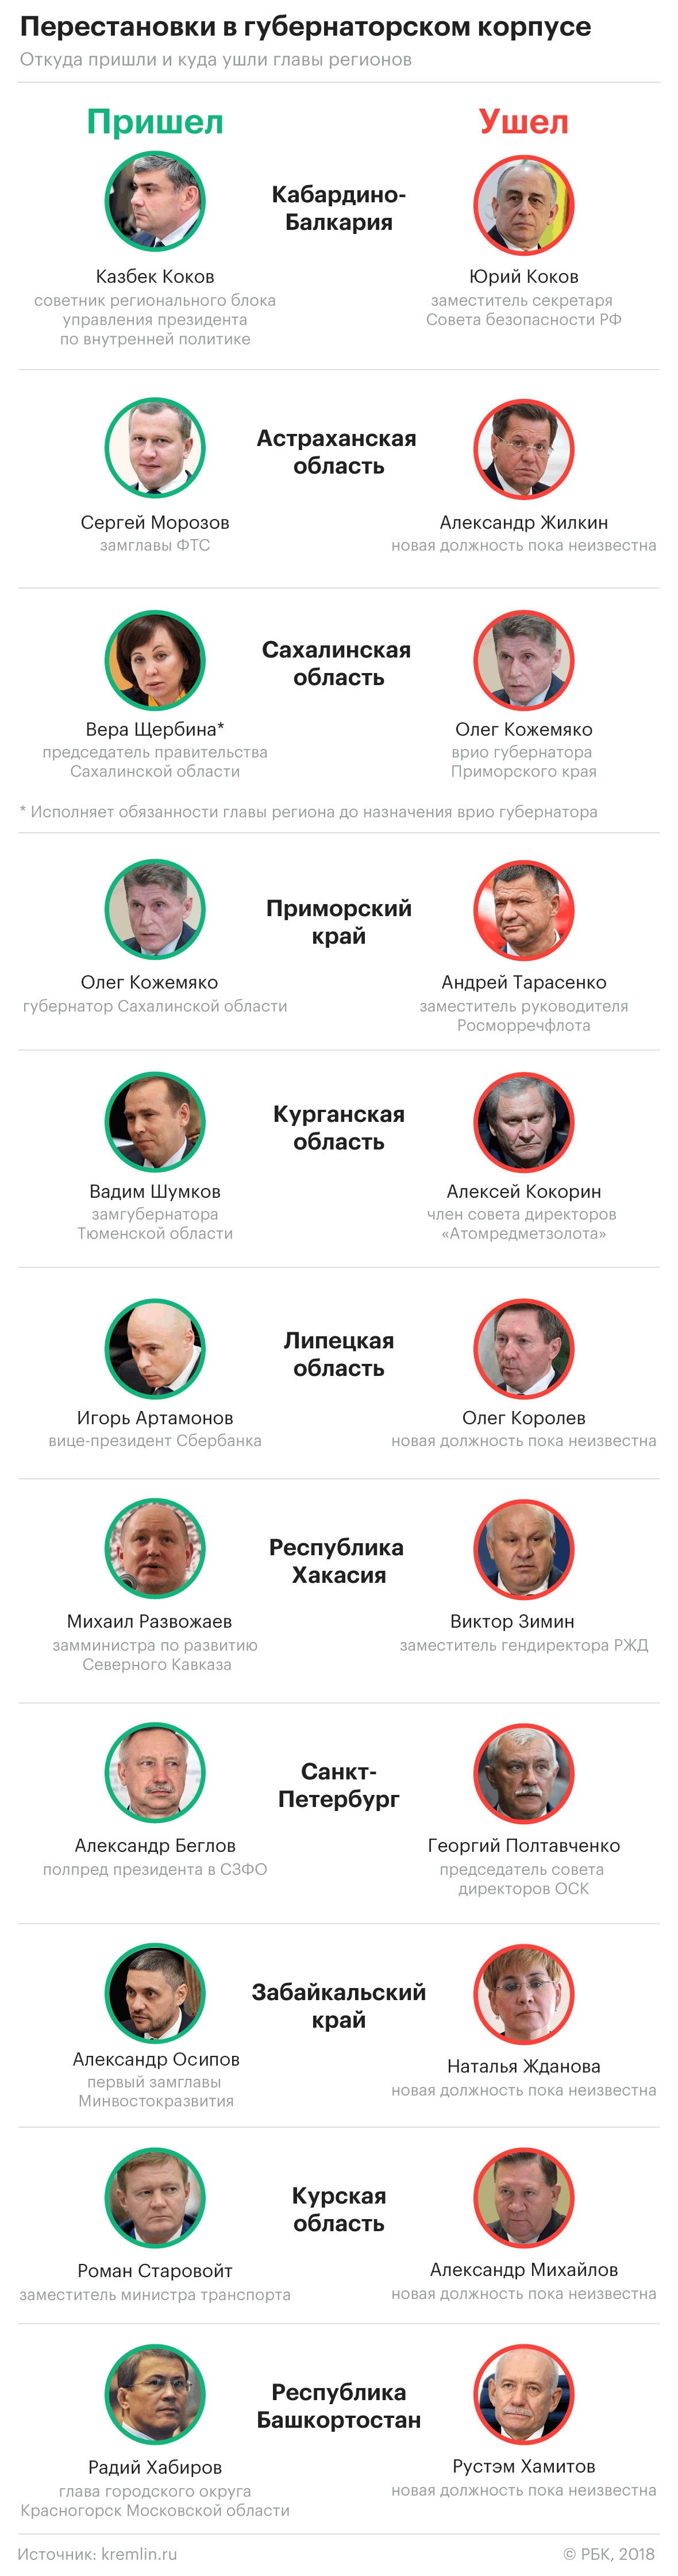 «Новые технократы»: как Путин сменил курганского и липецкого губернаторов